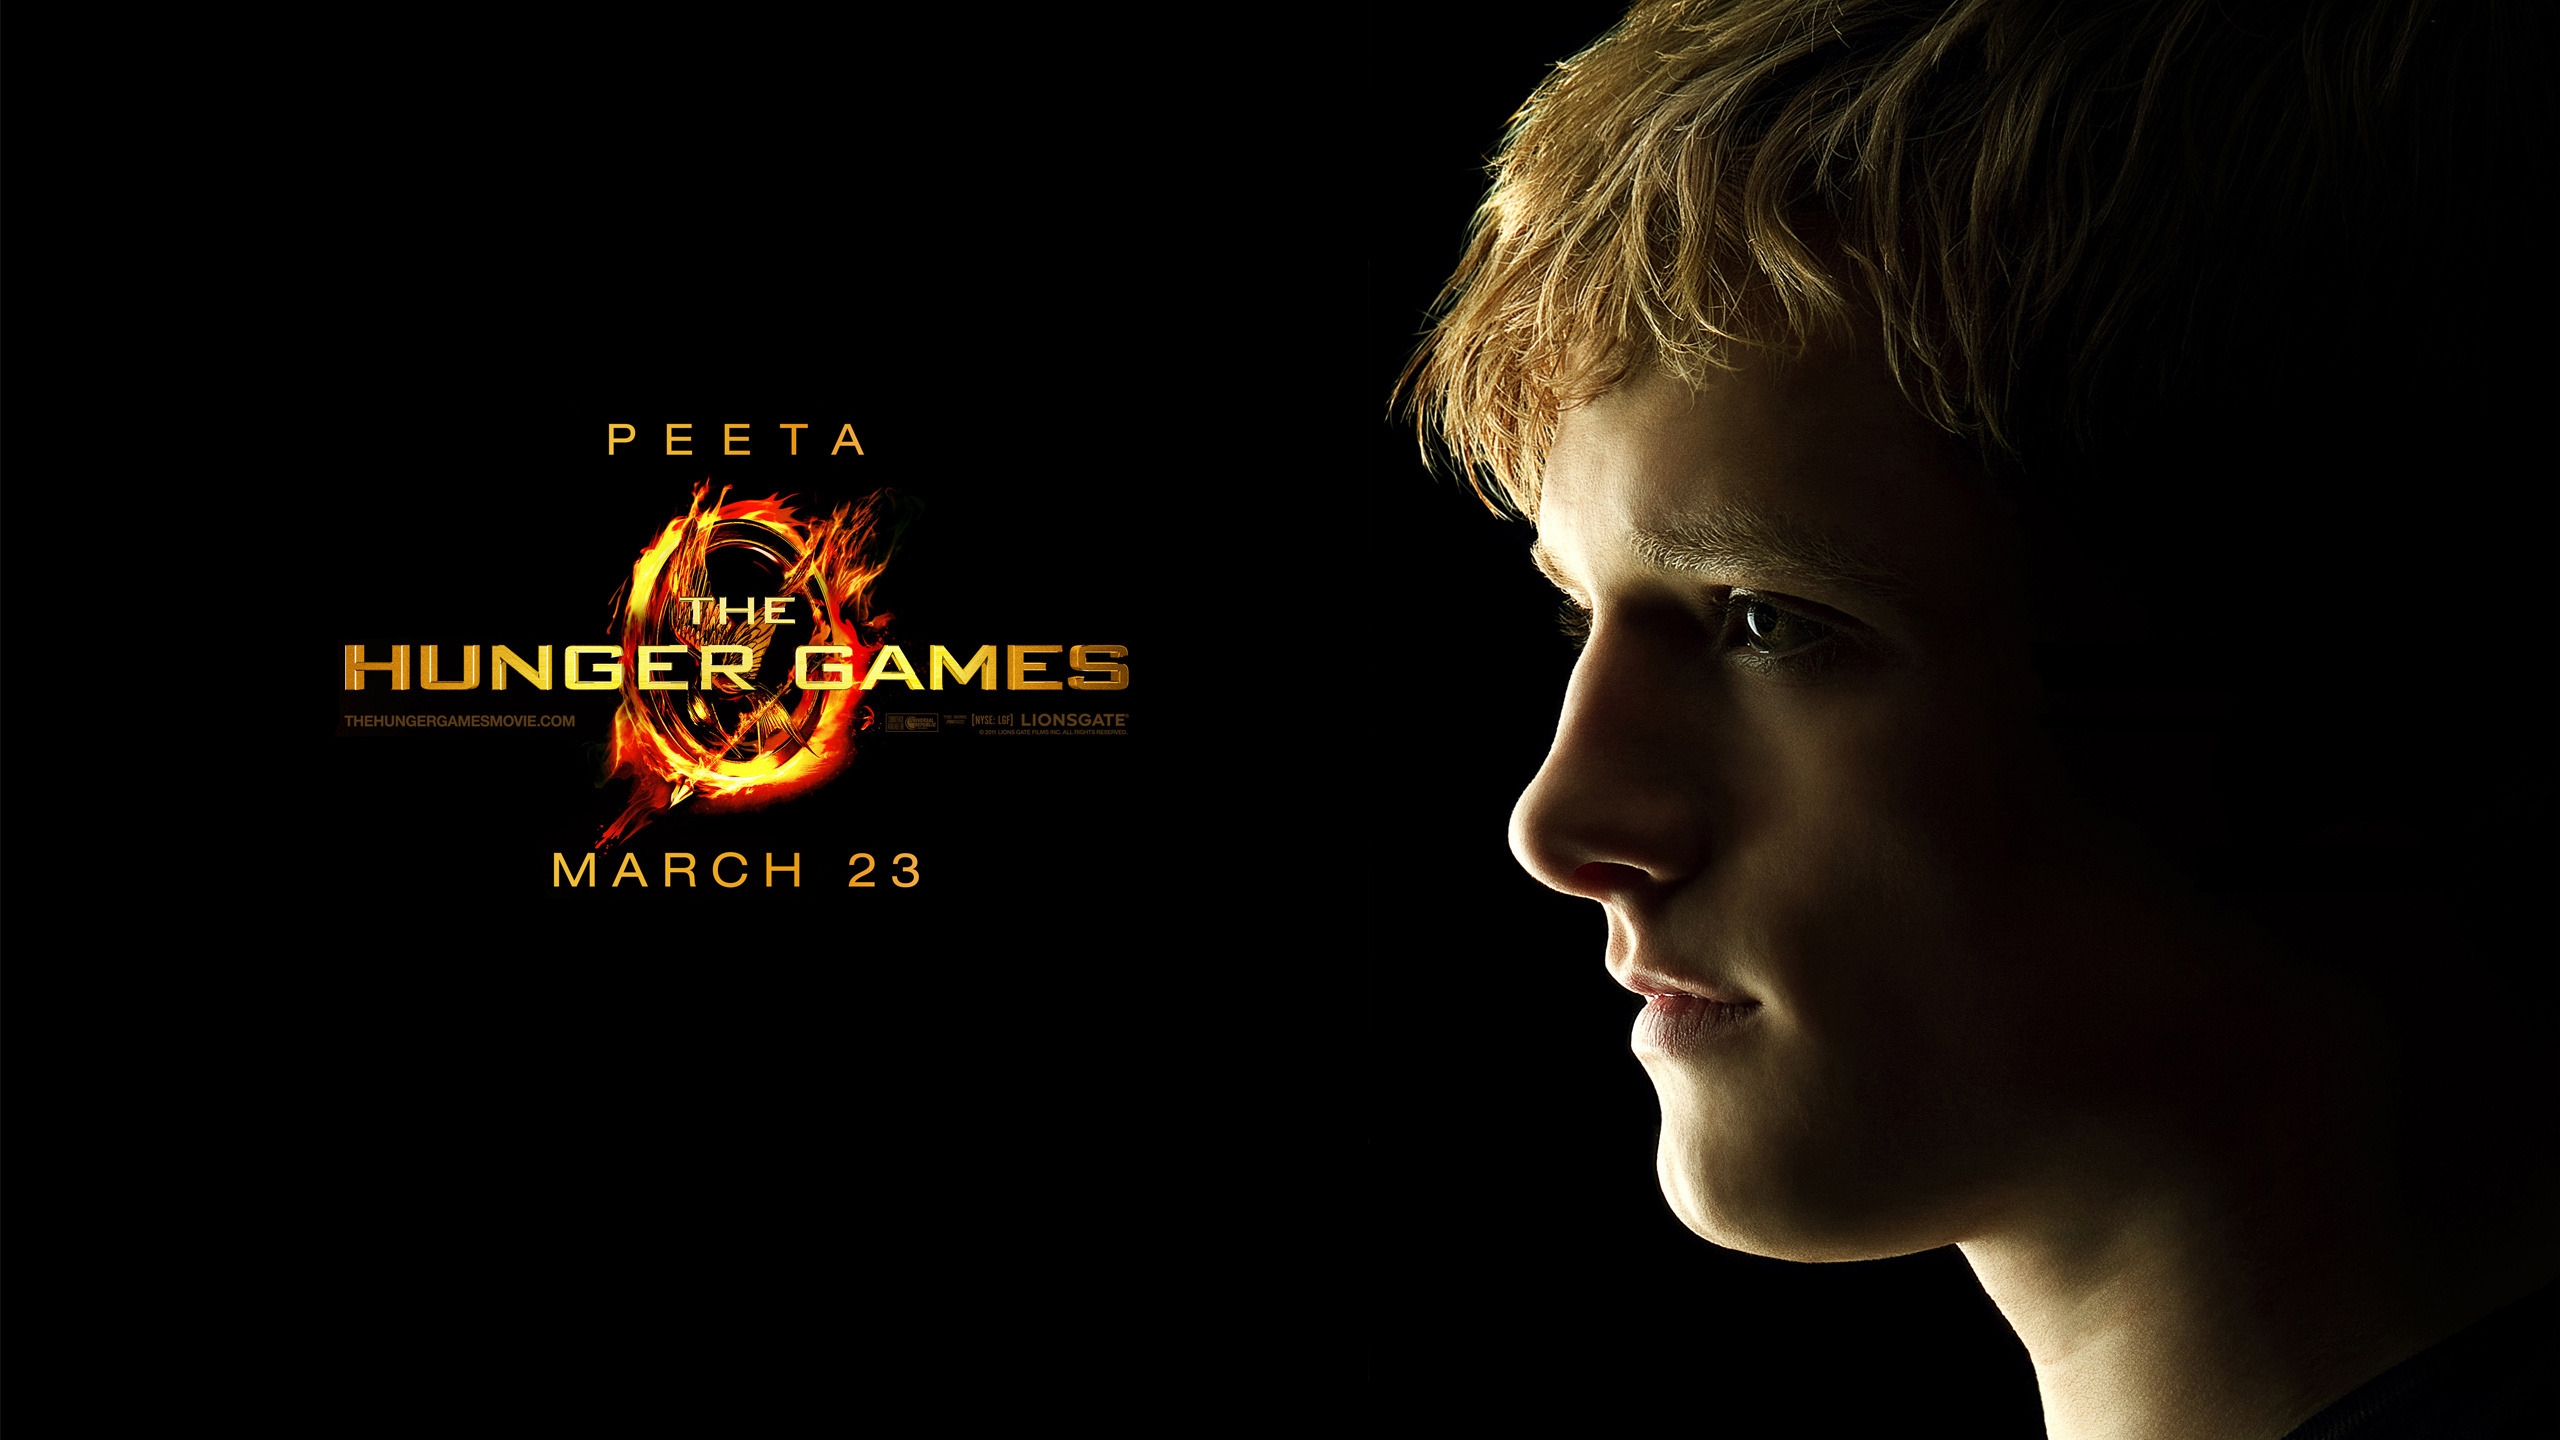 The Hunger Games Peeta for 2560x1440 HDTV resolution